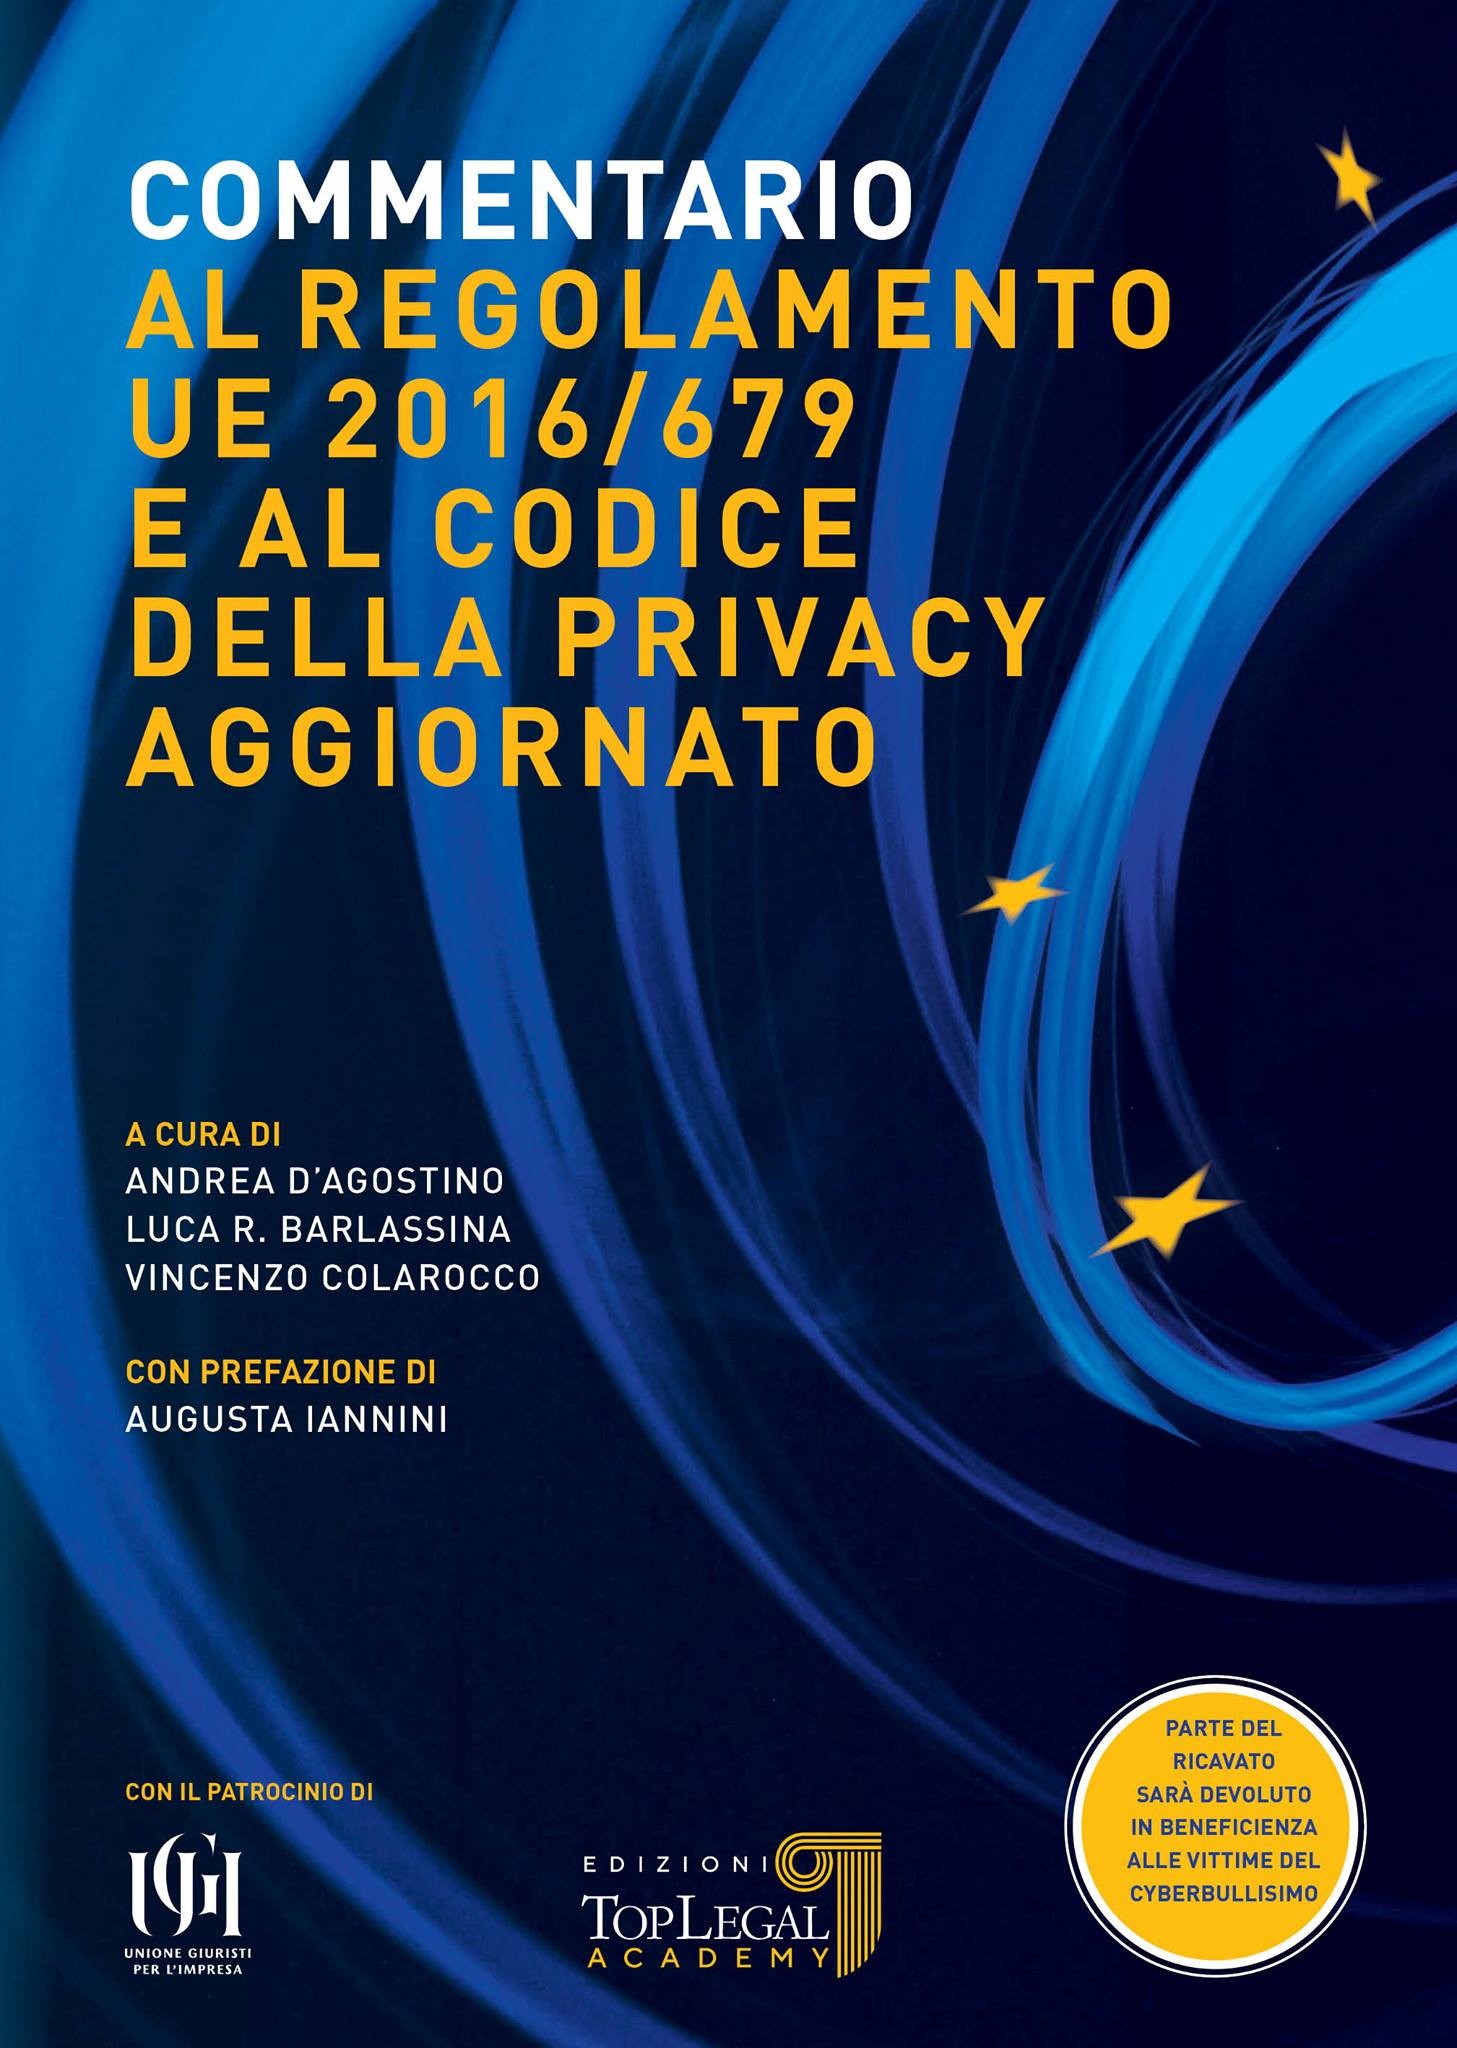 COMMENTARIO AL REGOLAMENTO UE 2016/679 E AL CODICE DELLA PRIVACY AGGIORNATO